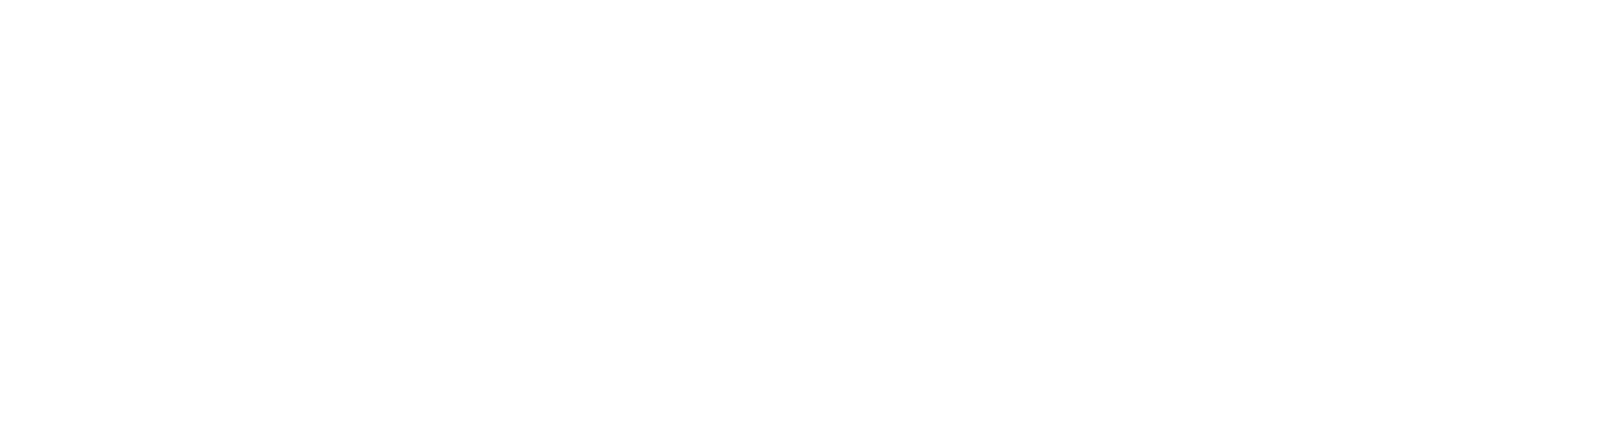 Dexus logo grand pour les fonds sombres (PNG transparent)